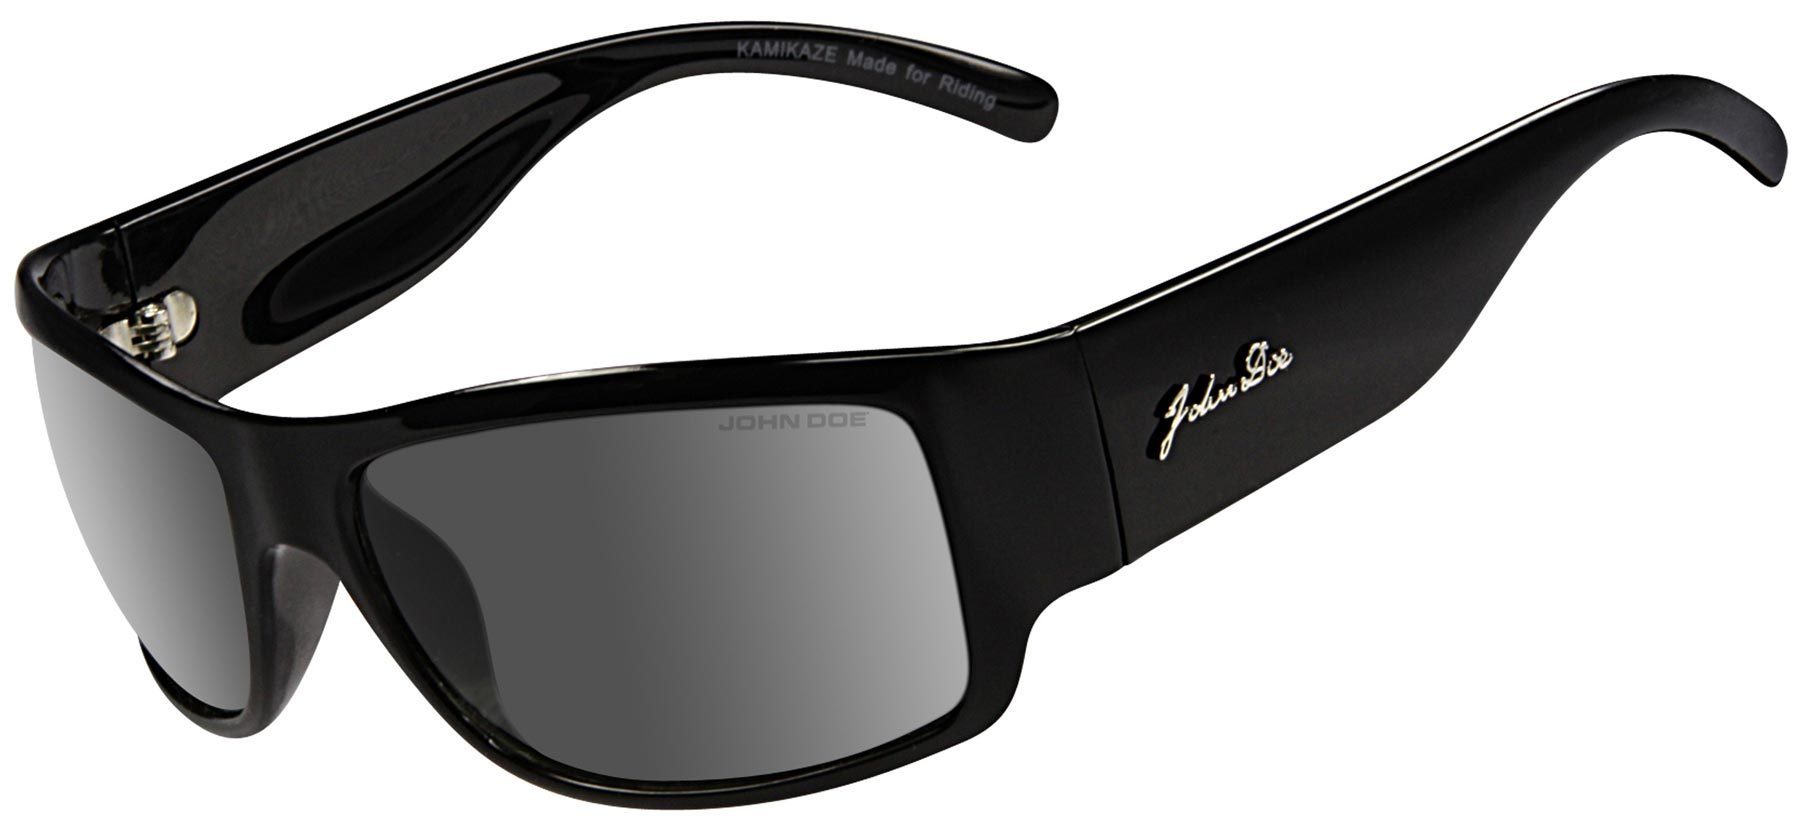 John Doe Kamikaze lunettes de soleil Noir unique taille